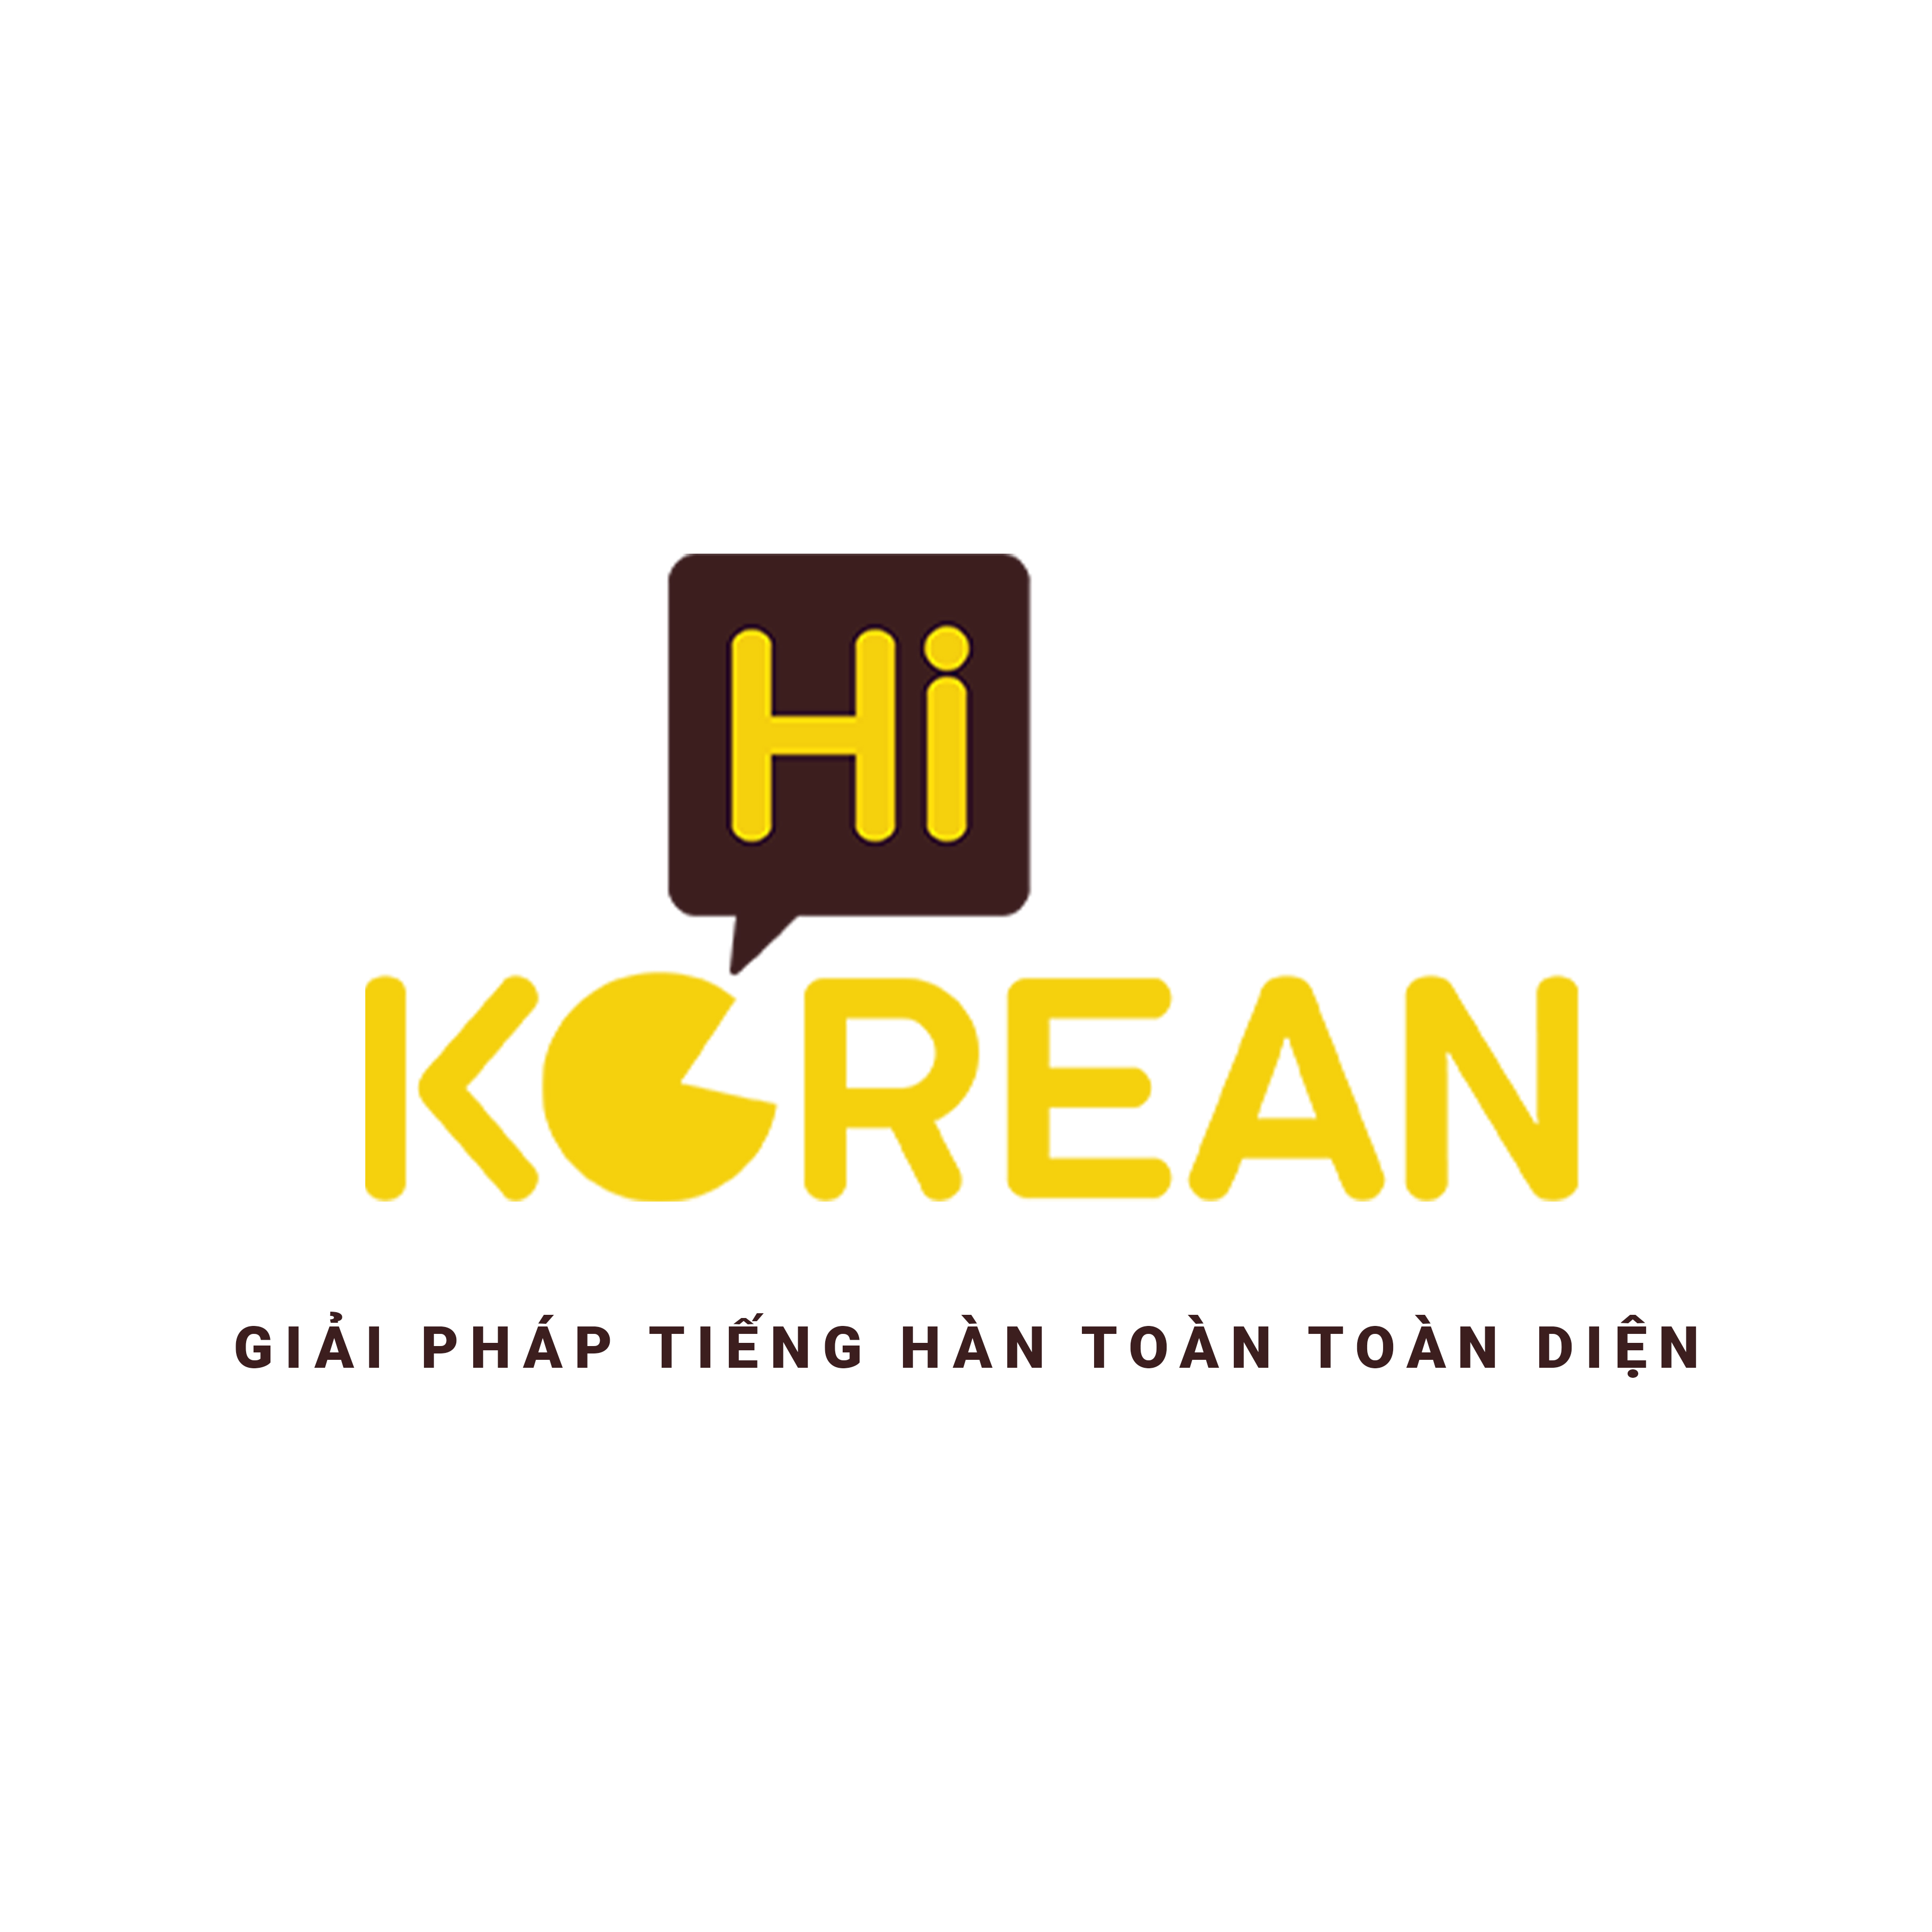 Hi Korean – Trung Tâm Tiếng Hàn Hiện Đại và Tân Tiến, Sự Chuyên Nghiệp Của Đội Ngũ Giáo Viên